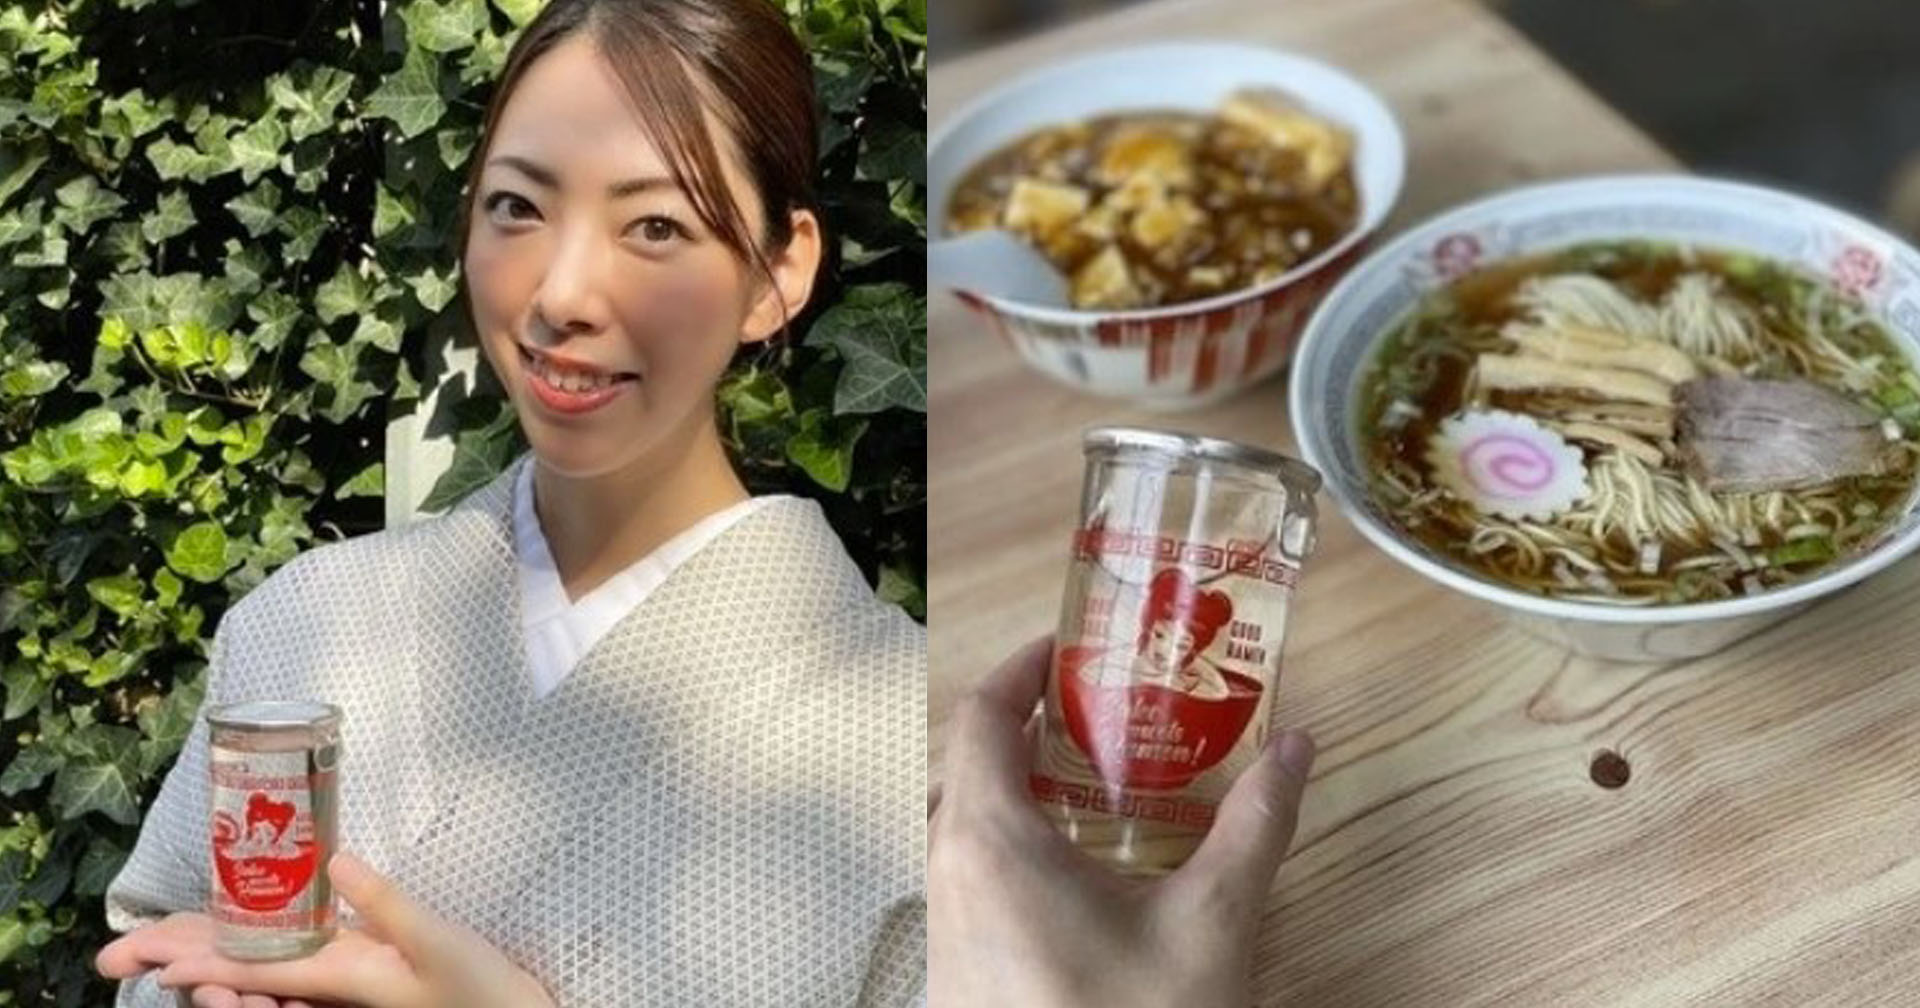 ชวนคนชอบดื่มมาลองชิม สาเกราเม็ง เครื่องดื่มใหม่ล่าสุดจากประเทศญี่ปุ่น